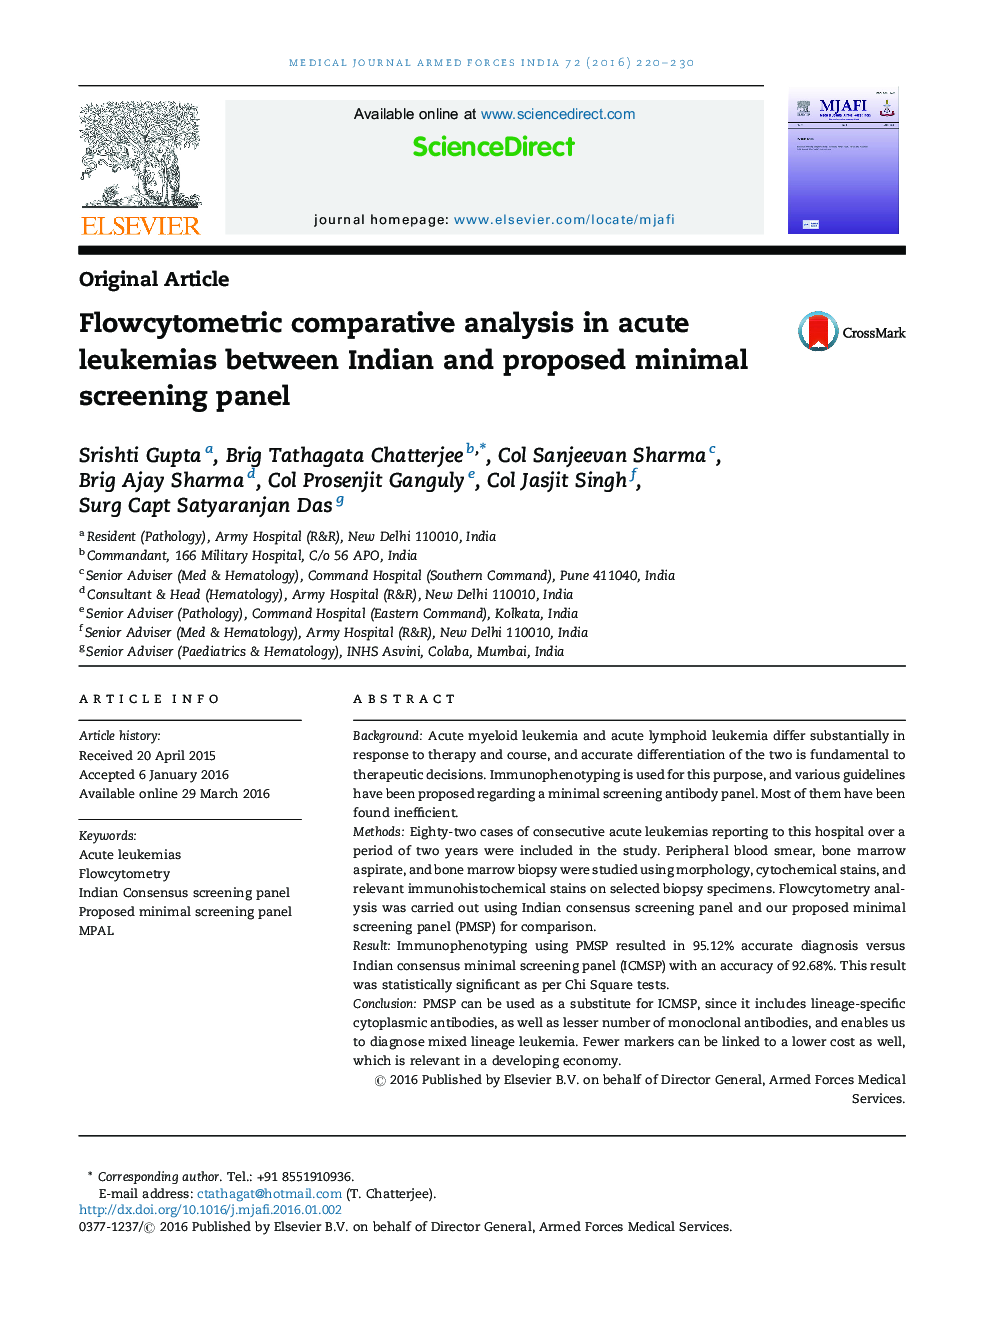 تجزیه و تحلیل تطبیقی Flowcytometric در لوسمی های حاد بین پانل غربالگری حداقلی پیشنهادی و هندی